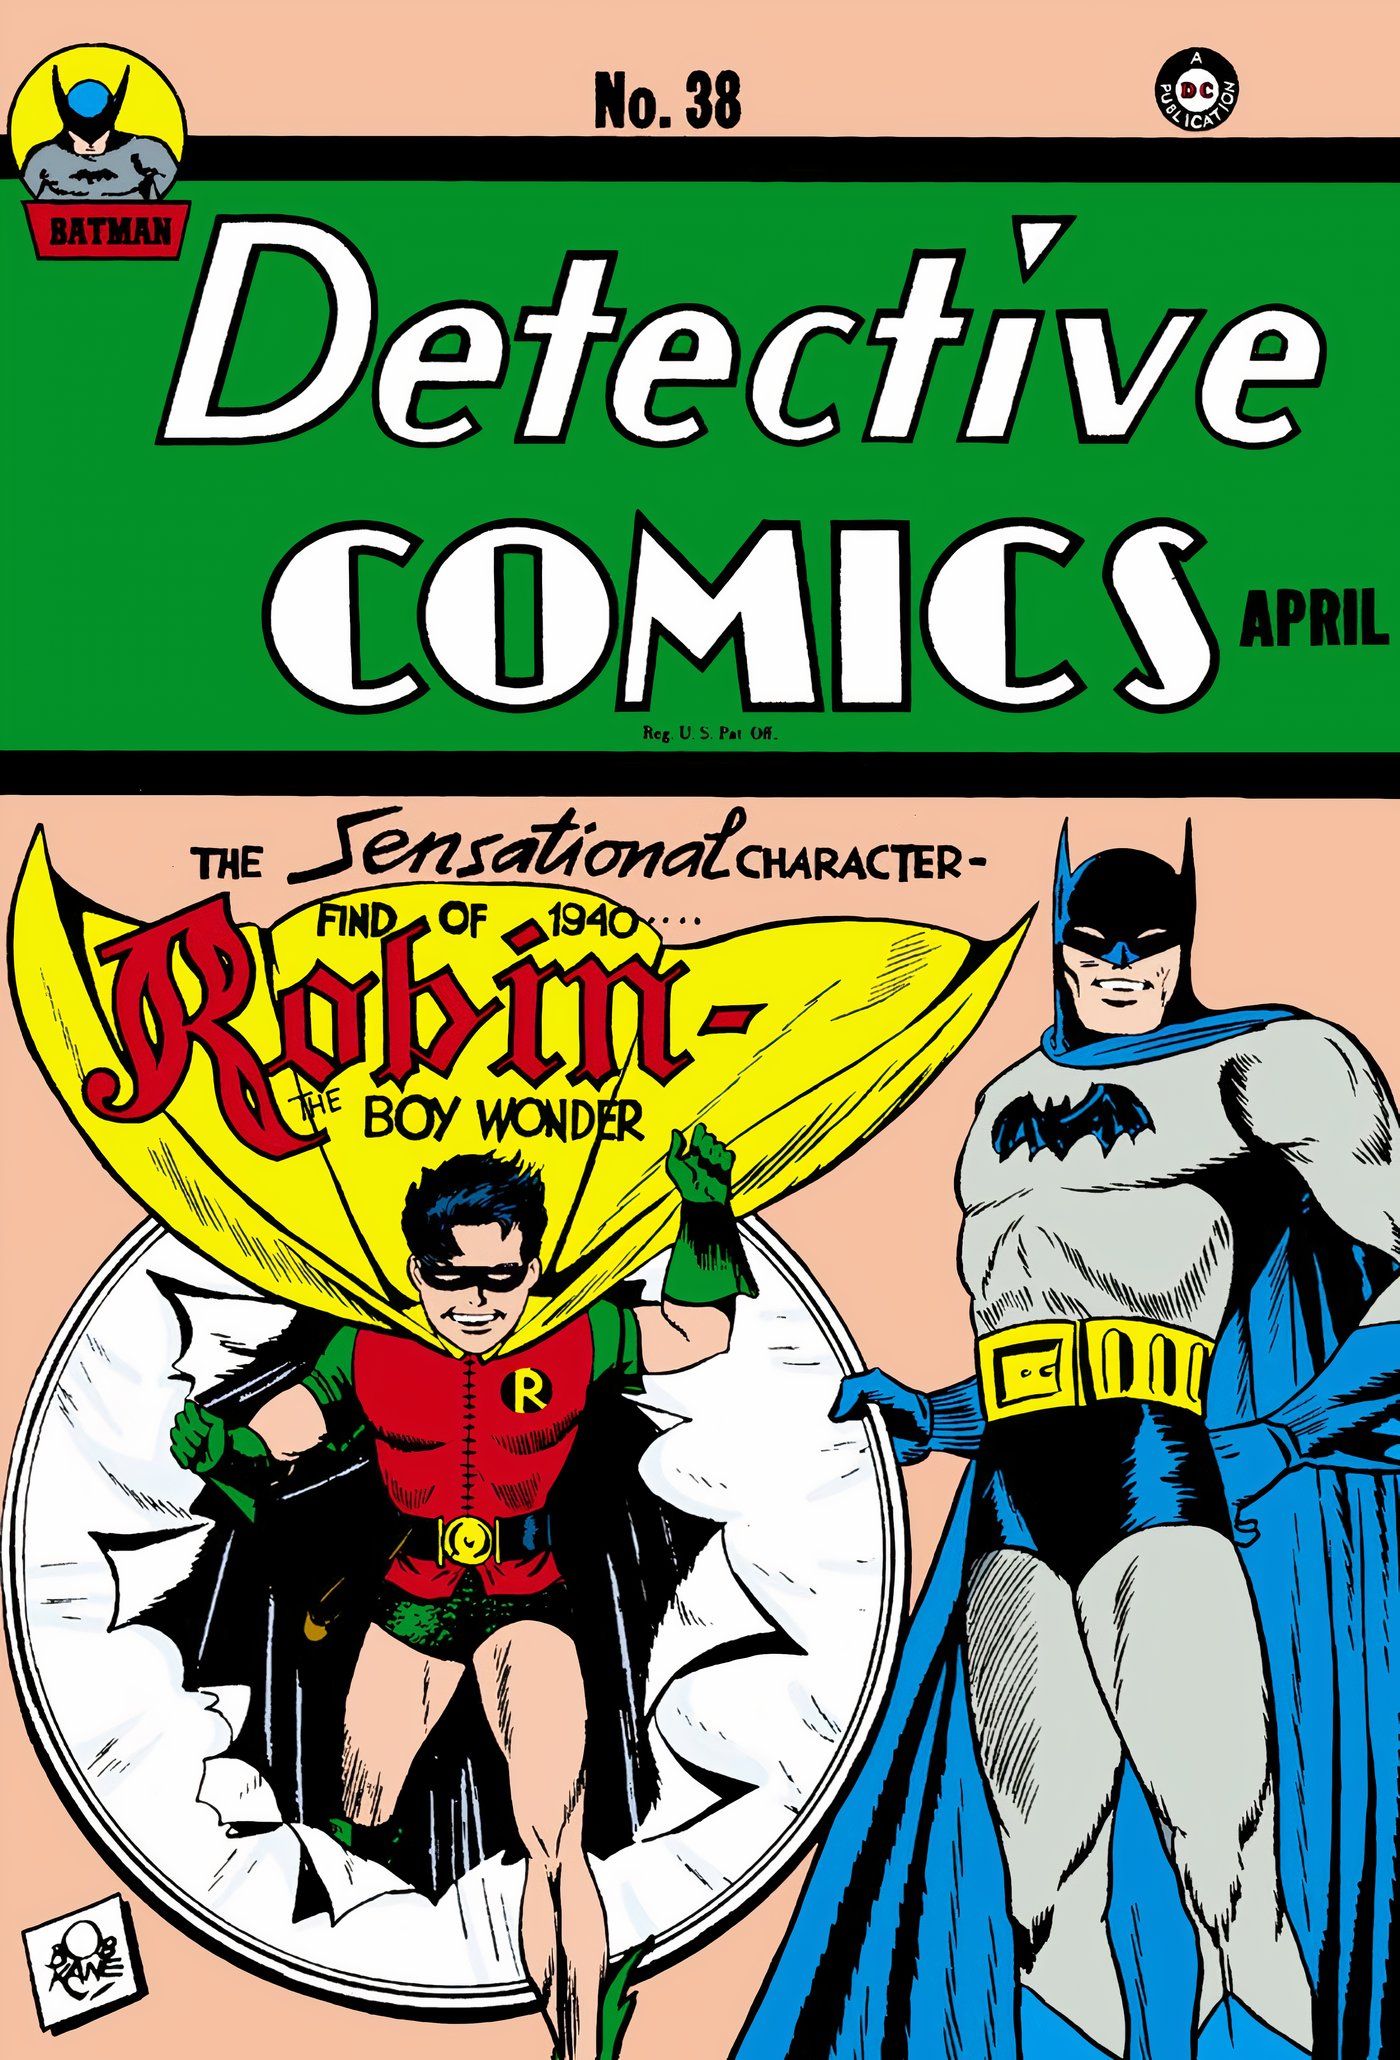 Primeira aparição de Robin Detective Comics 38 DC